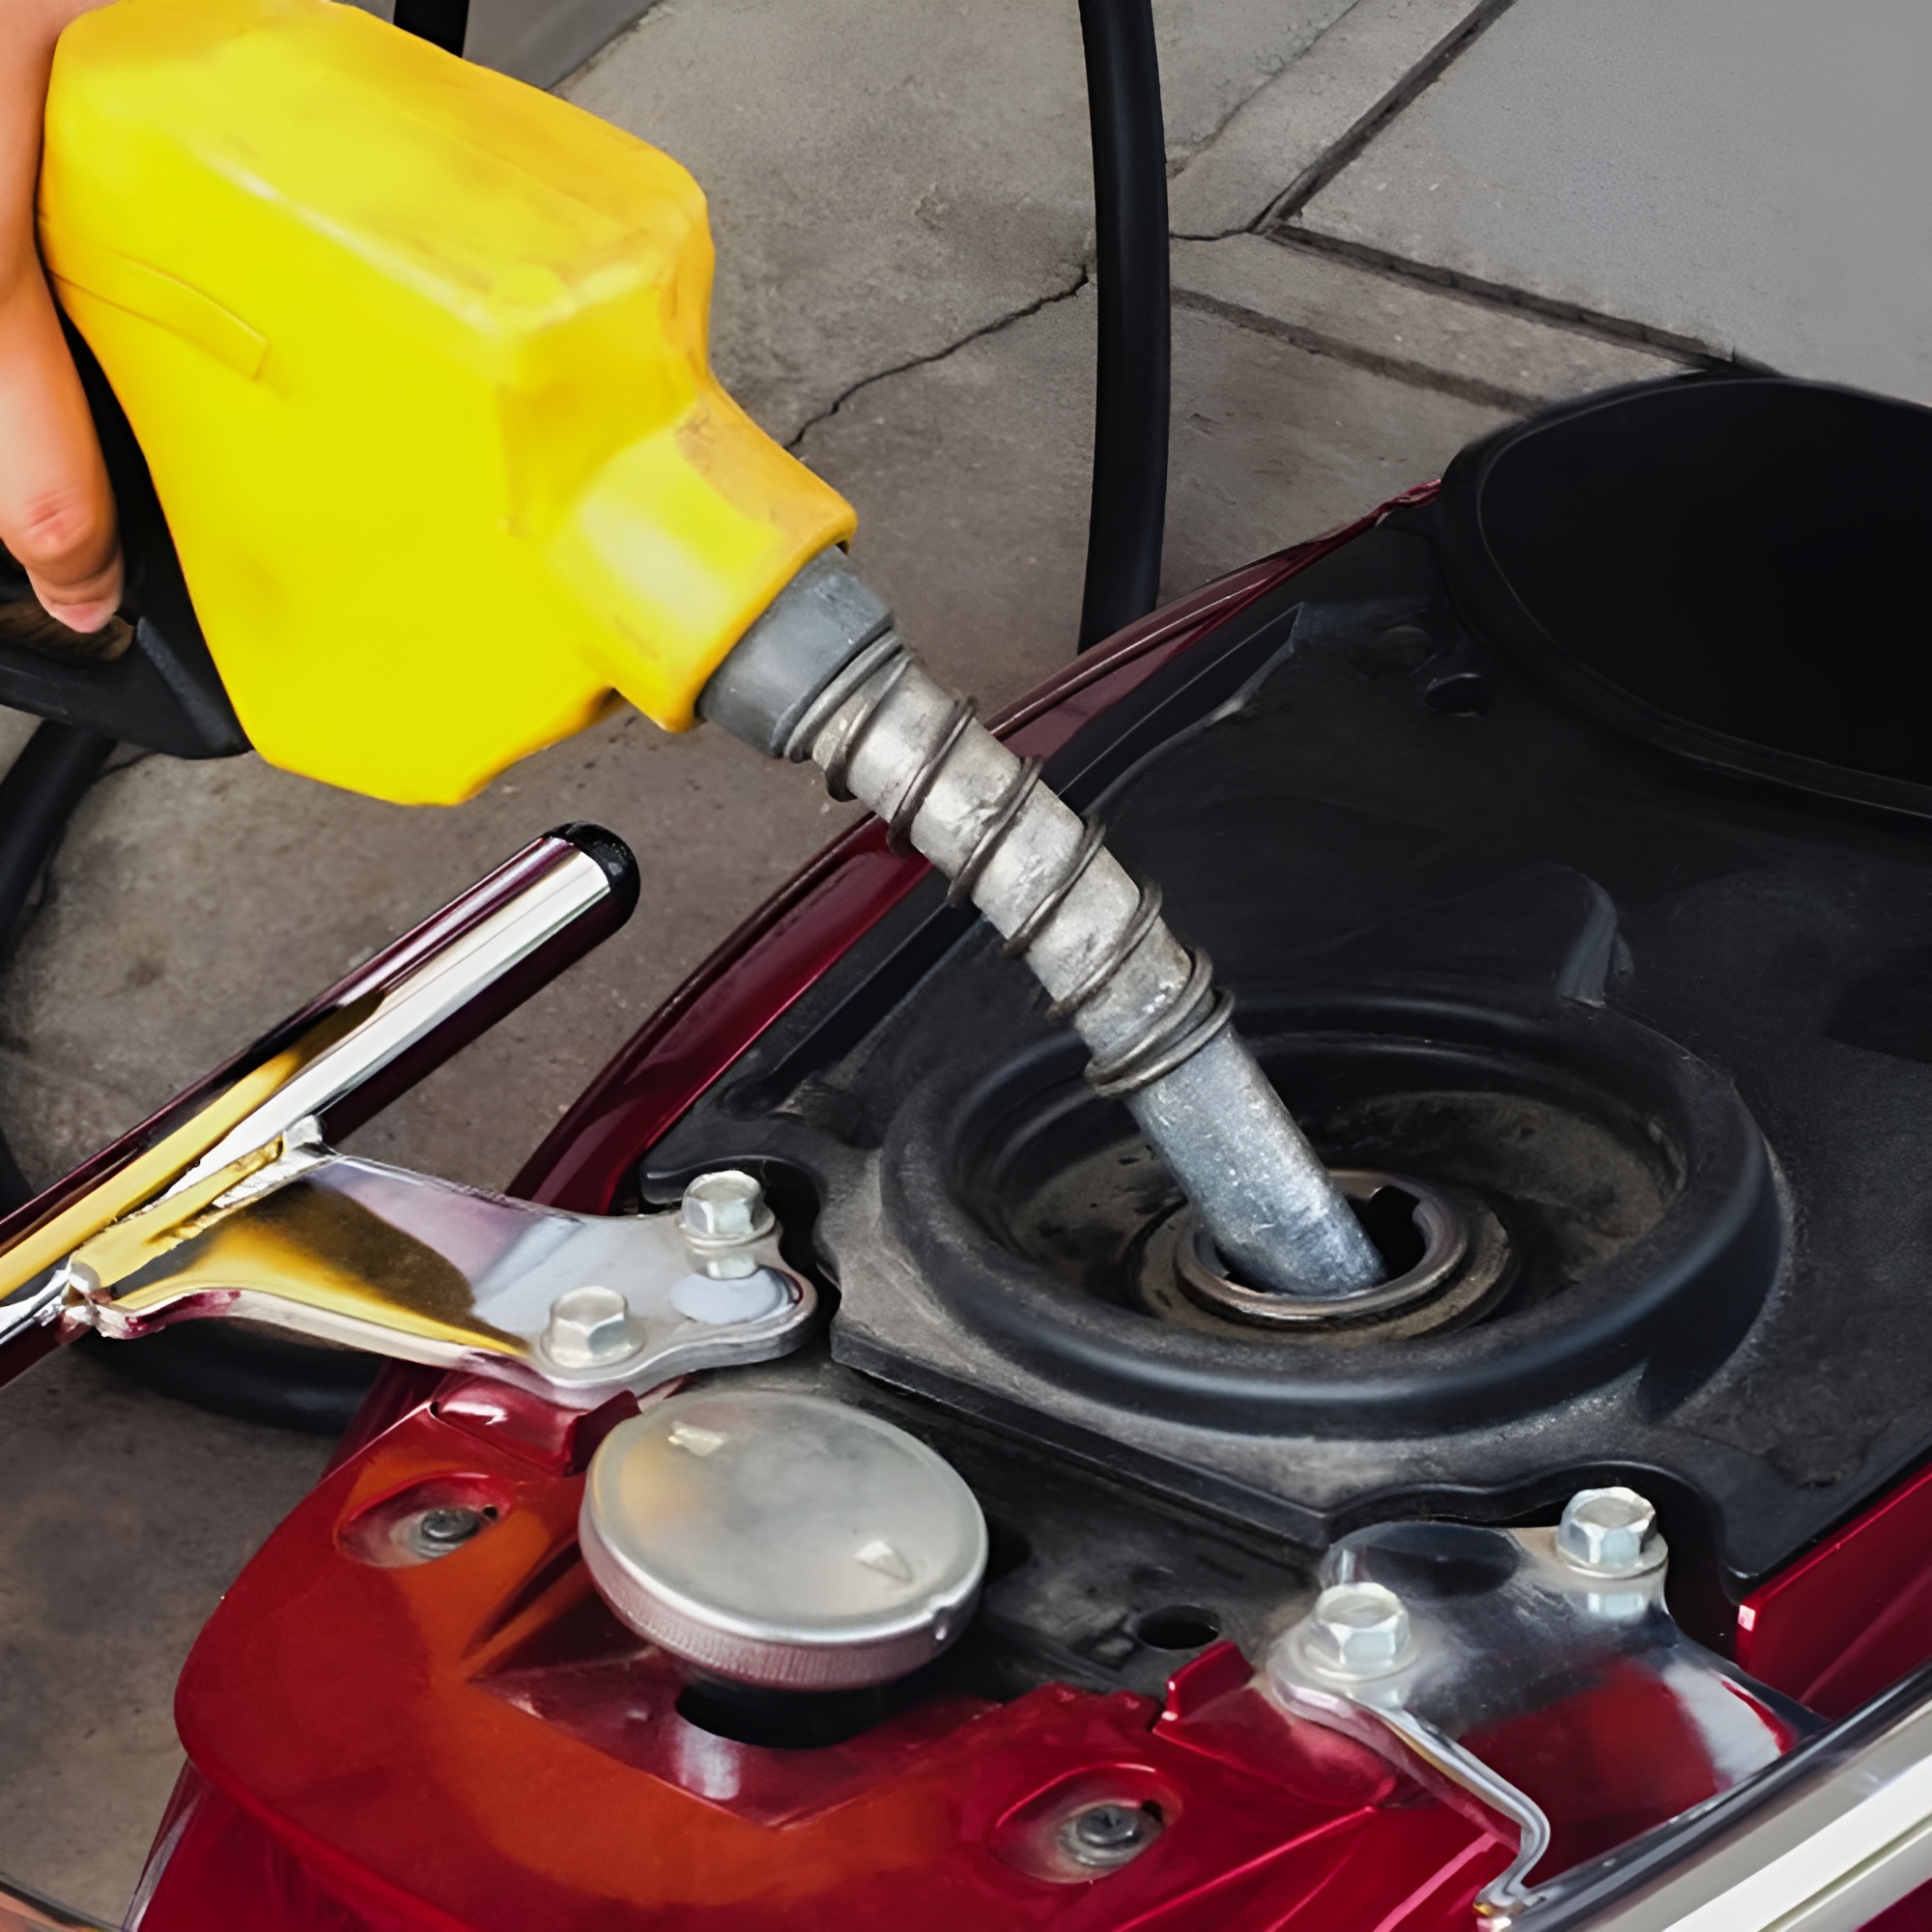 Sử dụng loại xăng không phù hợp cũng có thể là nguyên nhân dẫn tới quả tải nhiệt ở động cơ xe máy